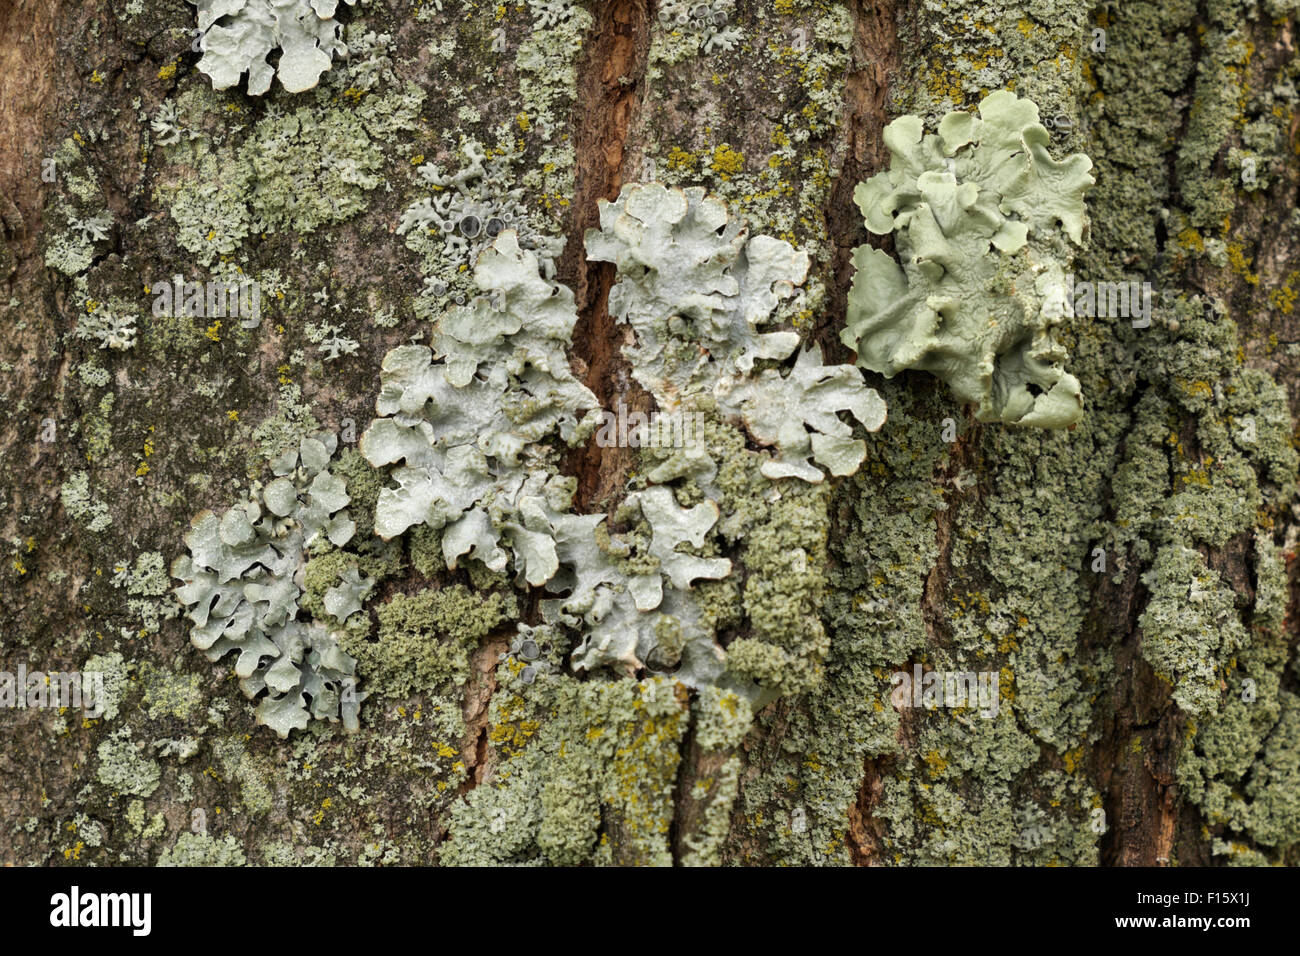 Les lichens et mousses poussant sur un arbre de Box Elder, dans le Michigan. Banque D'Images